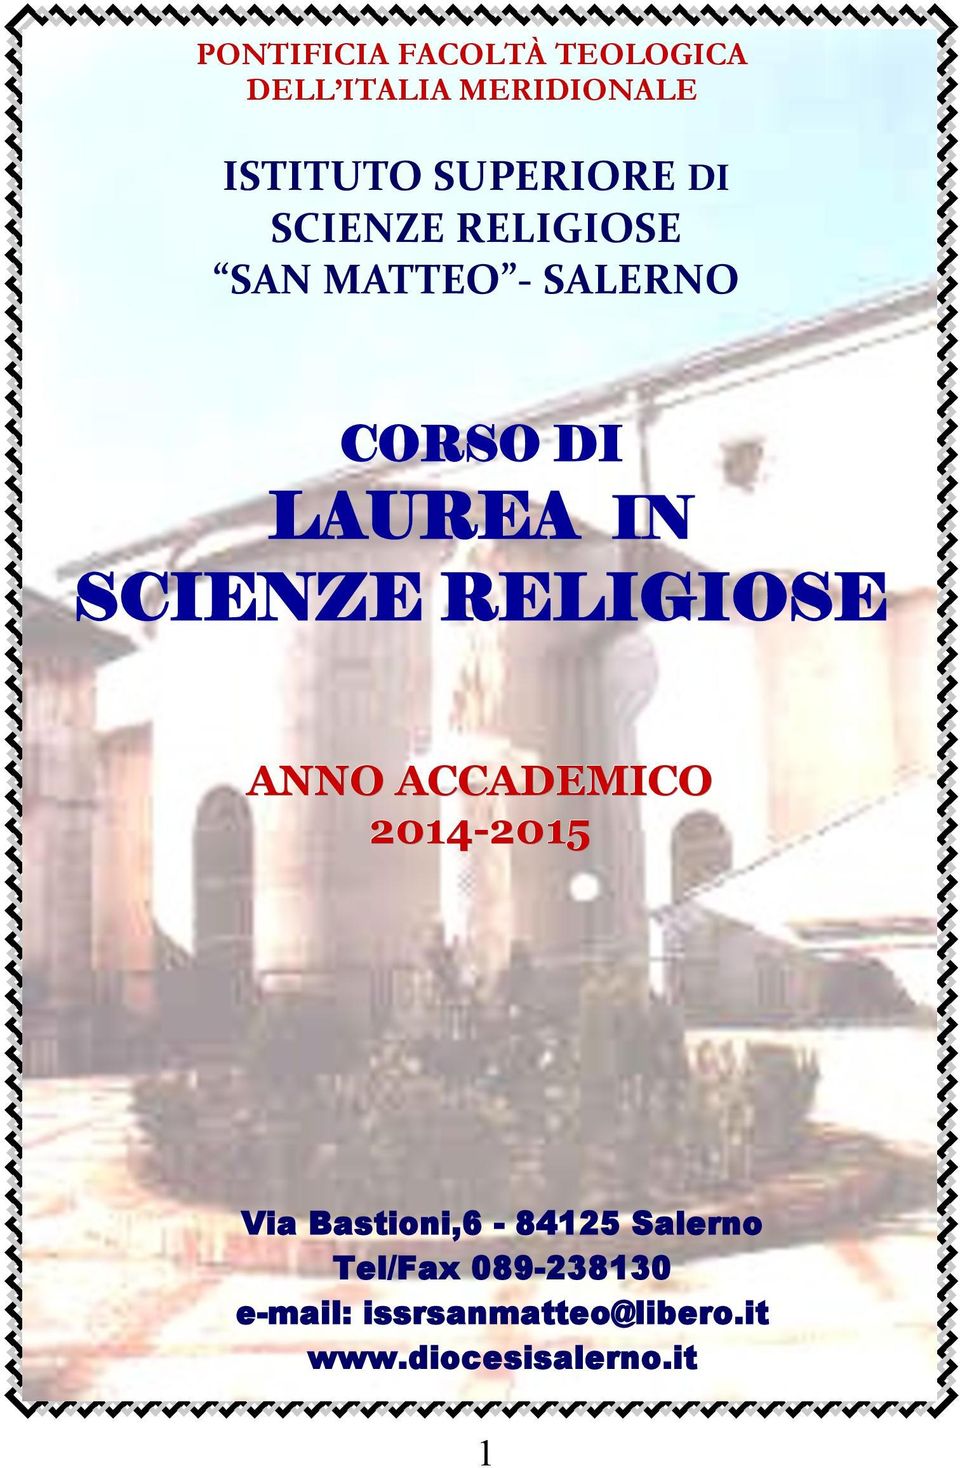 RELIGIOSE ANNO ACCADEMICO 2014-2015 2015 Via Bastioni,6-84125 Salerno